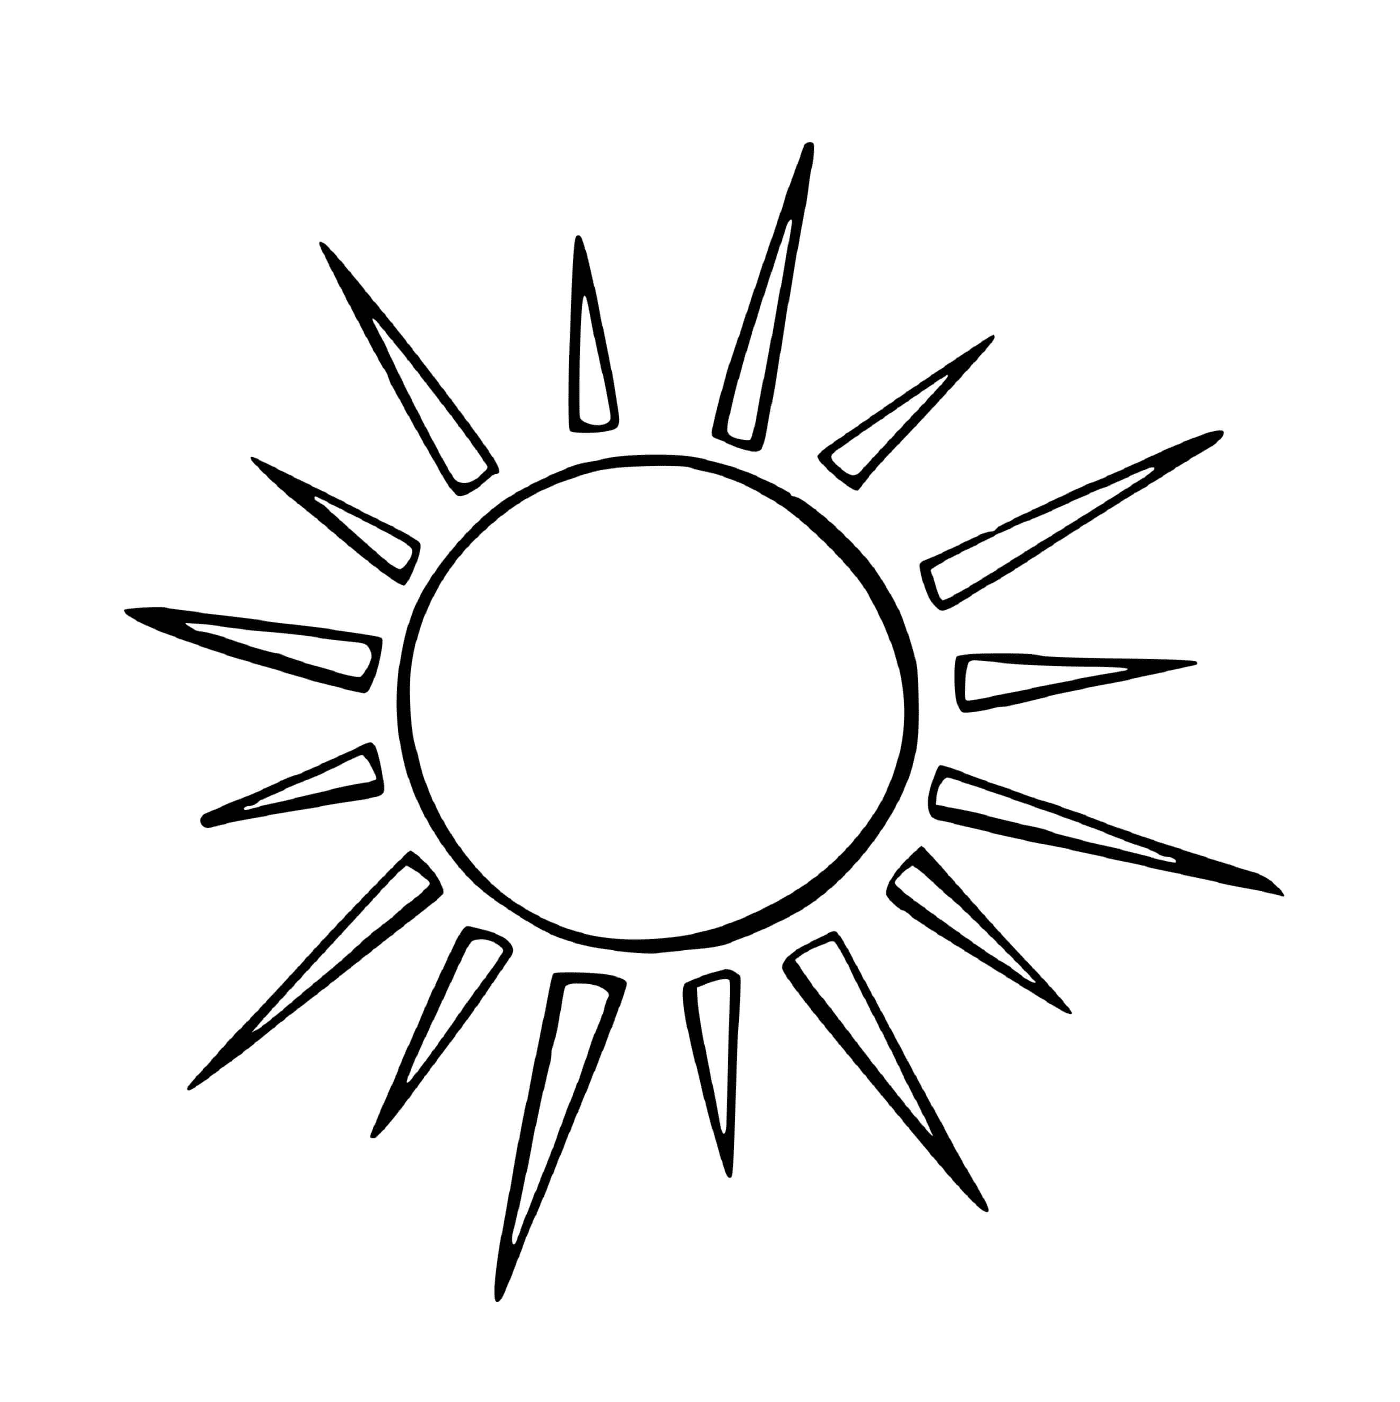  Солнце с заостренным излучением 